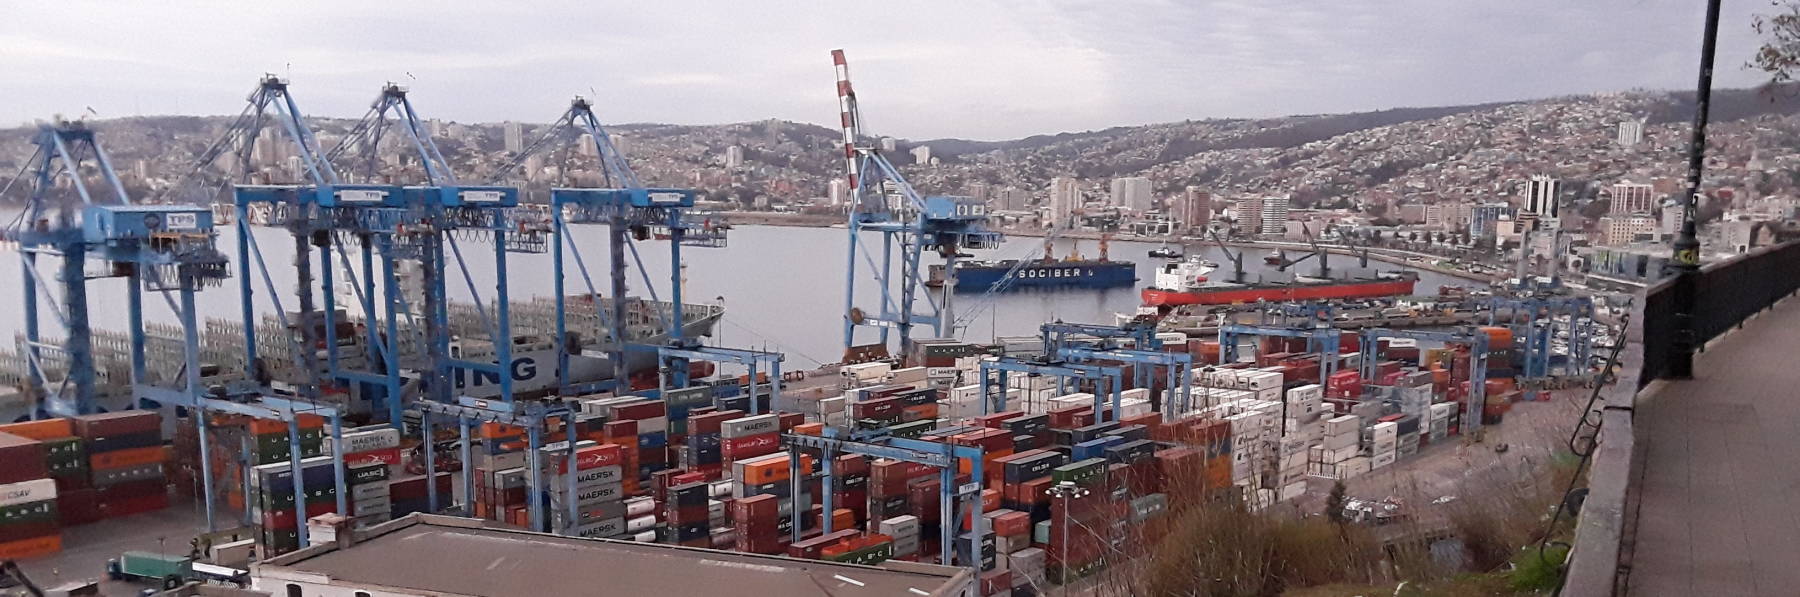 Valparaíso harbor.